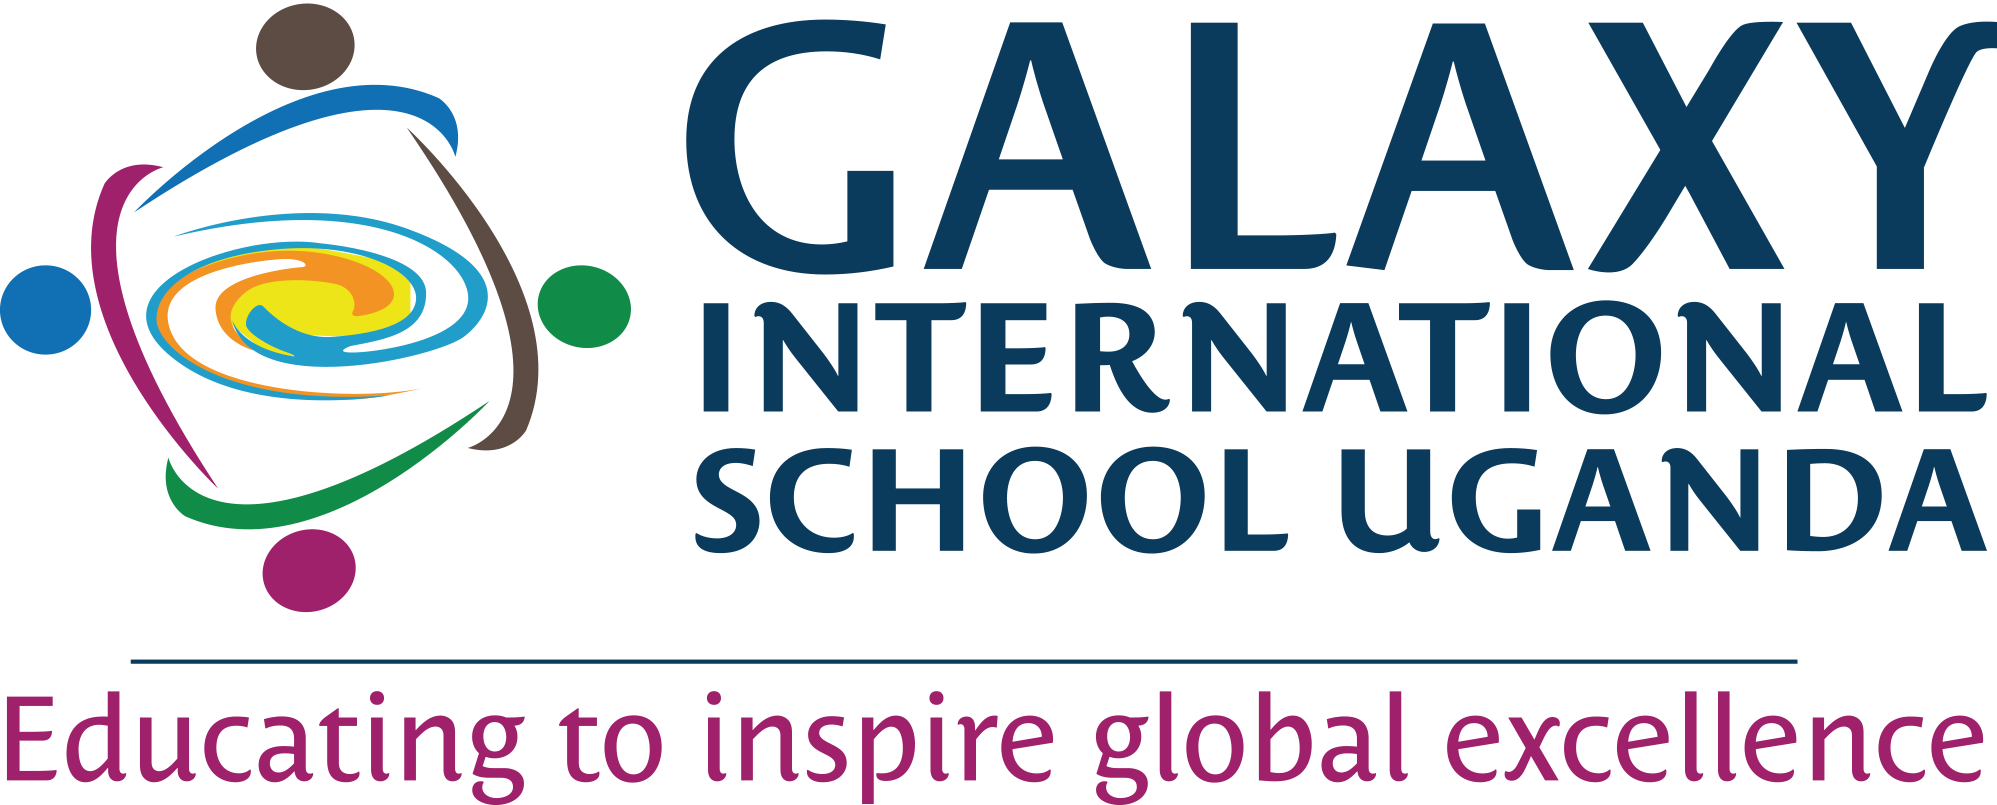 Galaxy International School Uganda - banner